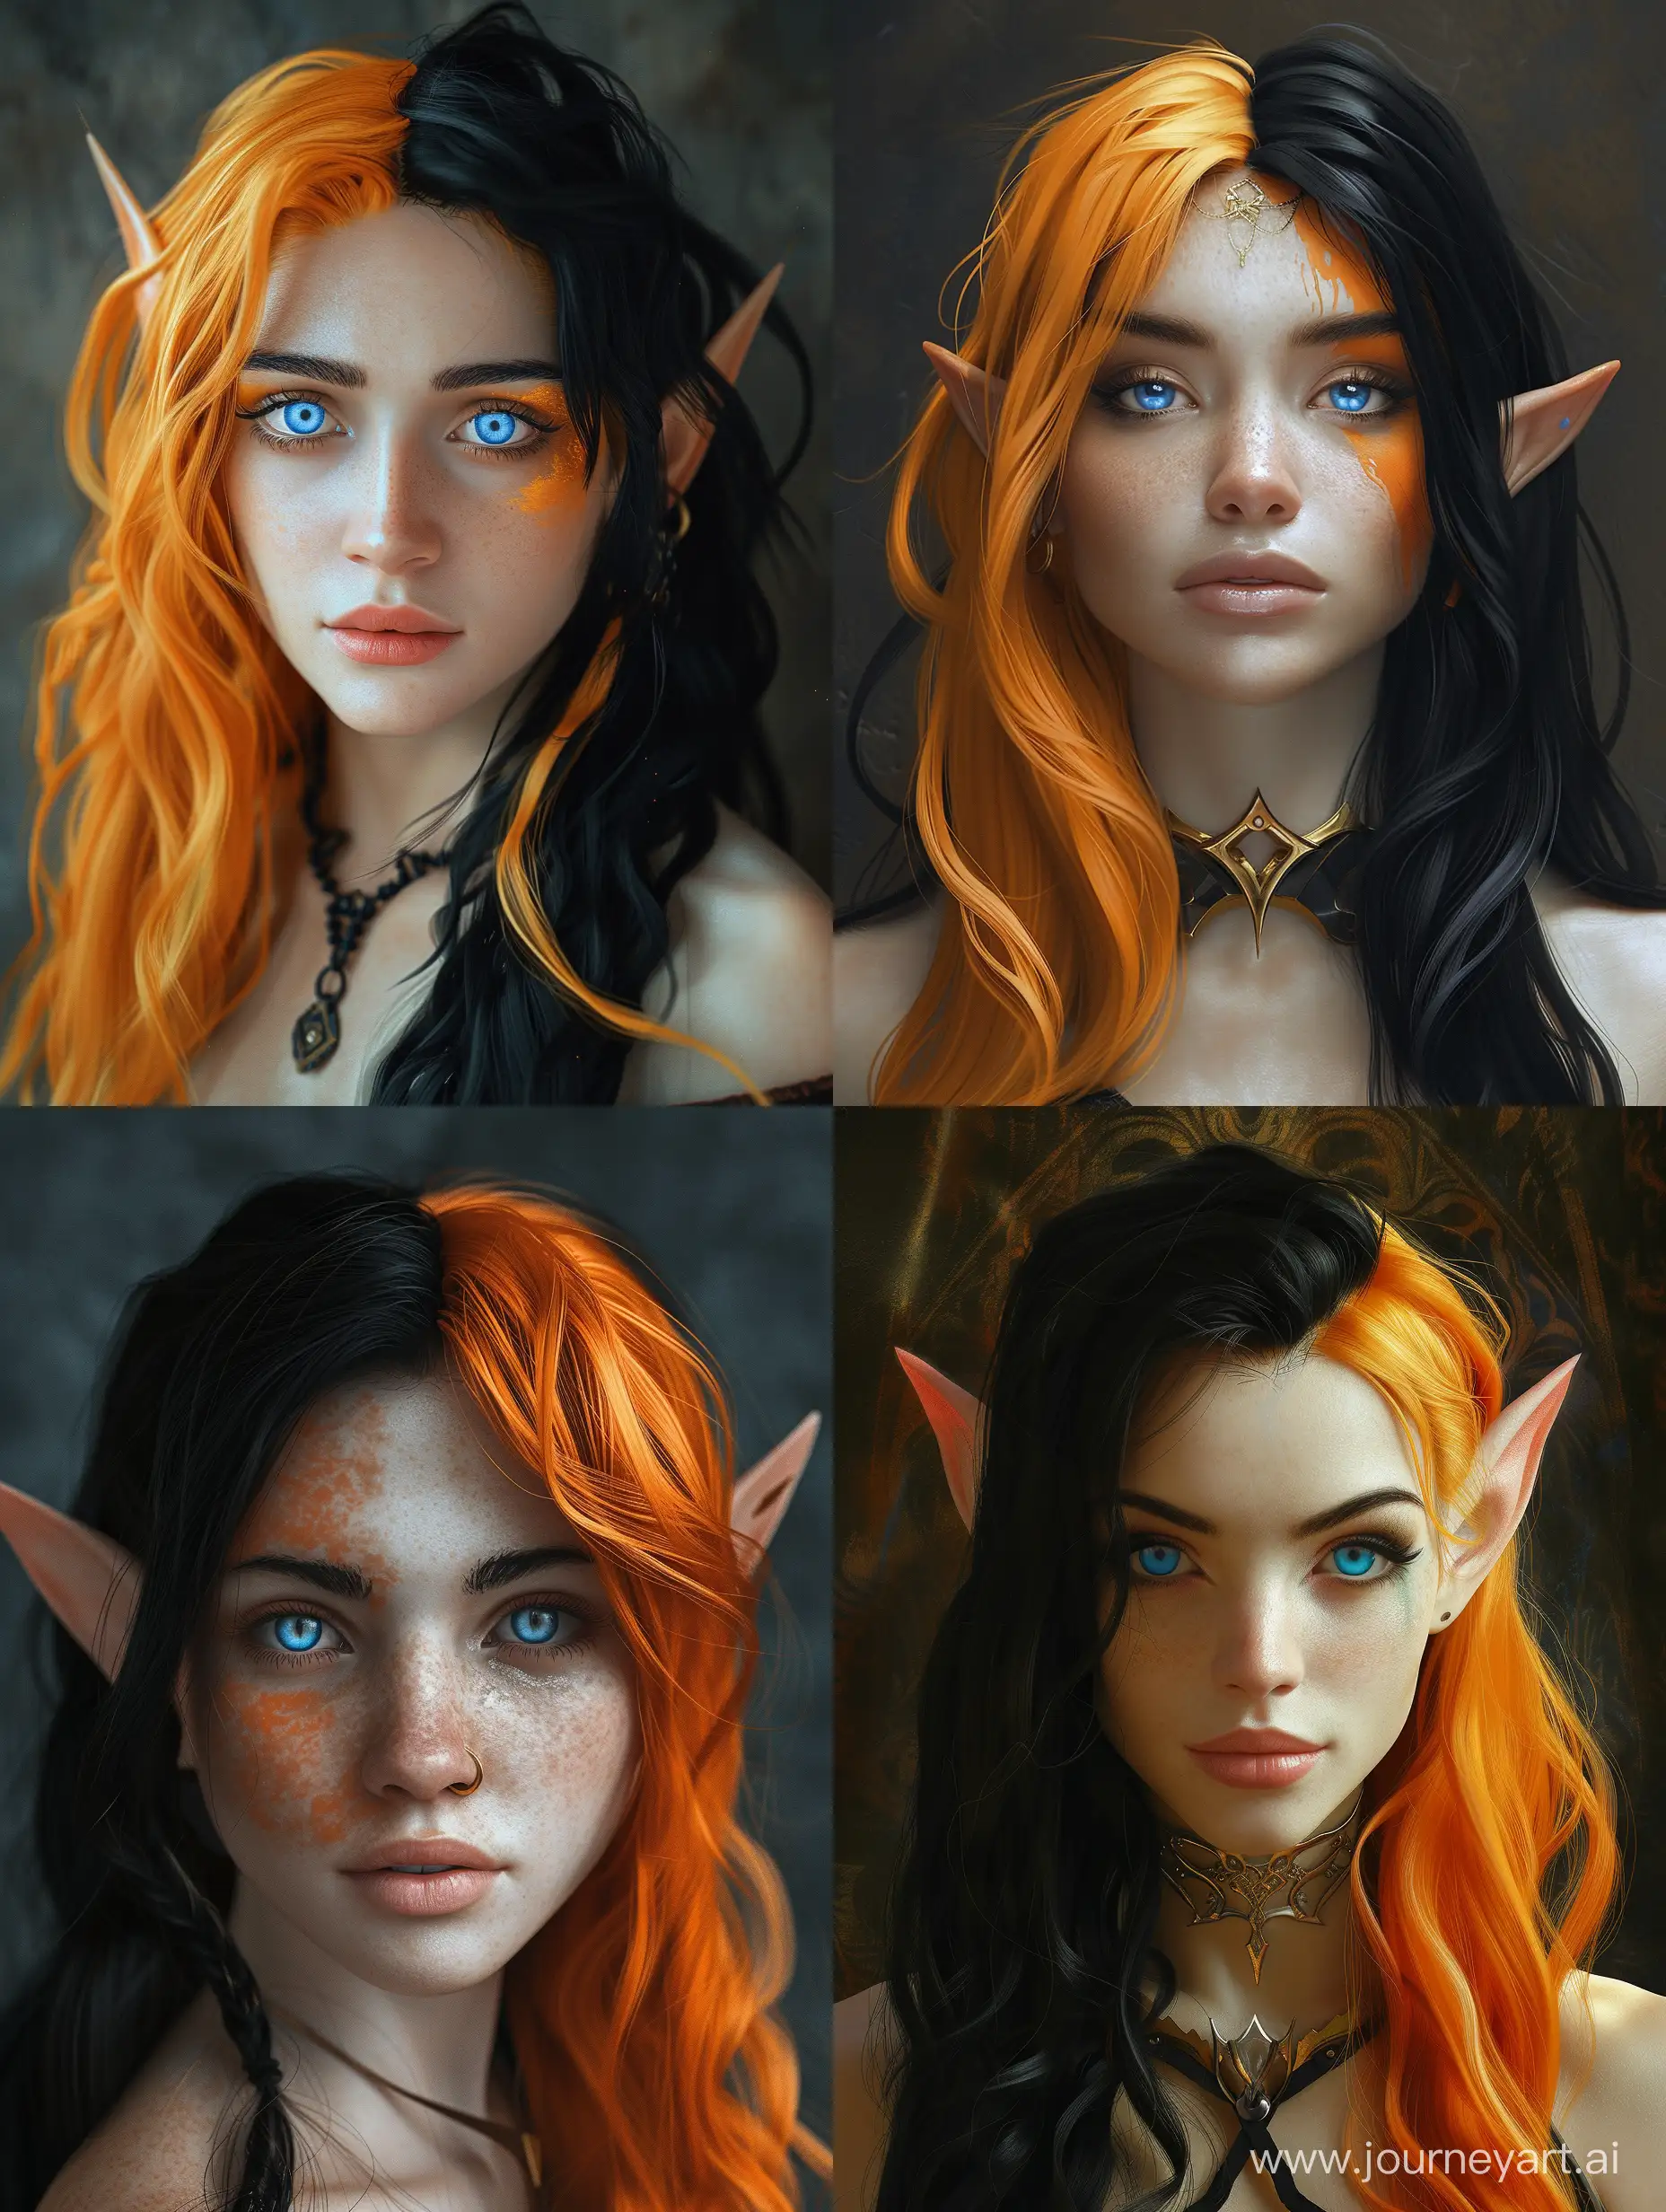 Realistic portrait of a female elf with tan skin, half black hair, half orange hair, bright blue eyes